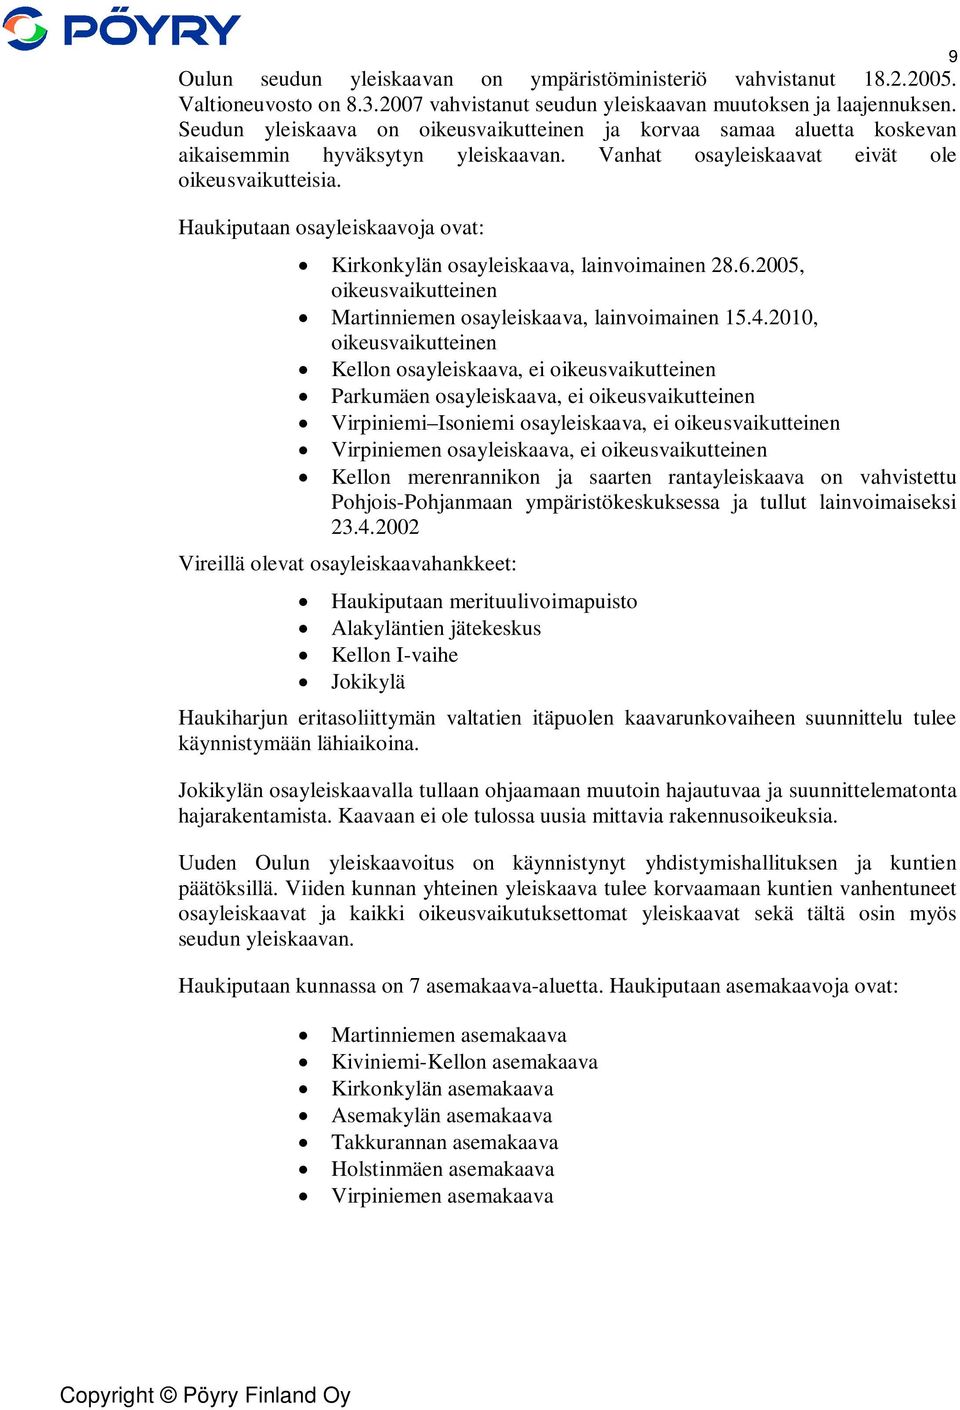 Haukiputaan osayleiskaavoja ovat: Kirkonkylän osayleiskaava, lainvoimainen 28.6.2005, oikeusvaikutteinen Martinniemen osayleiskaava, lainvoimainen 15.4.